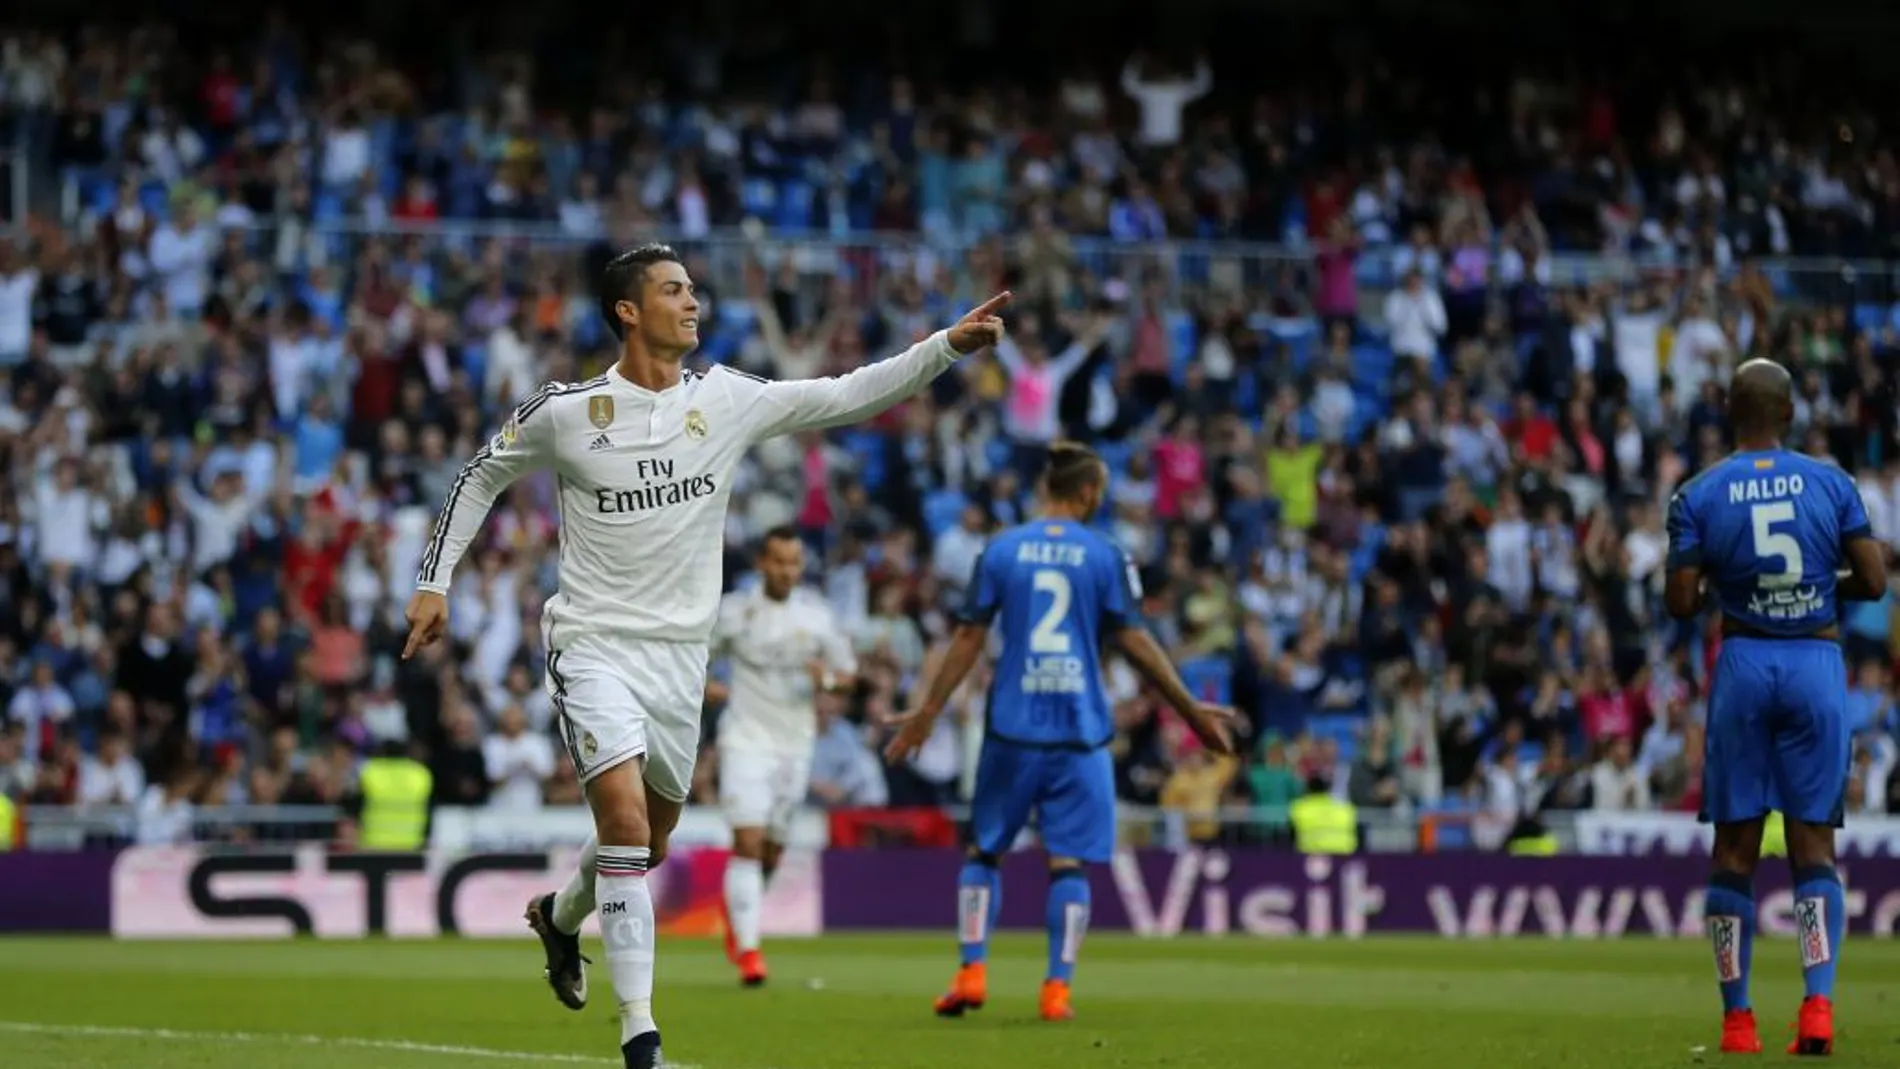 El jugador Cristiano Ronaldo celebra uno de los goles marcados al Getafe